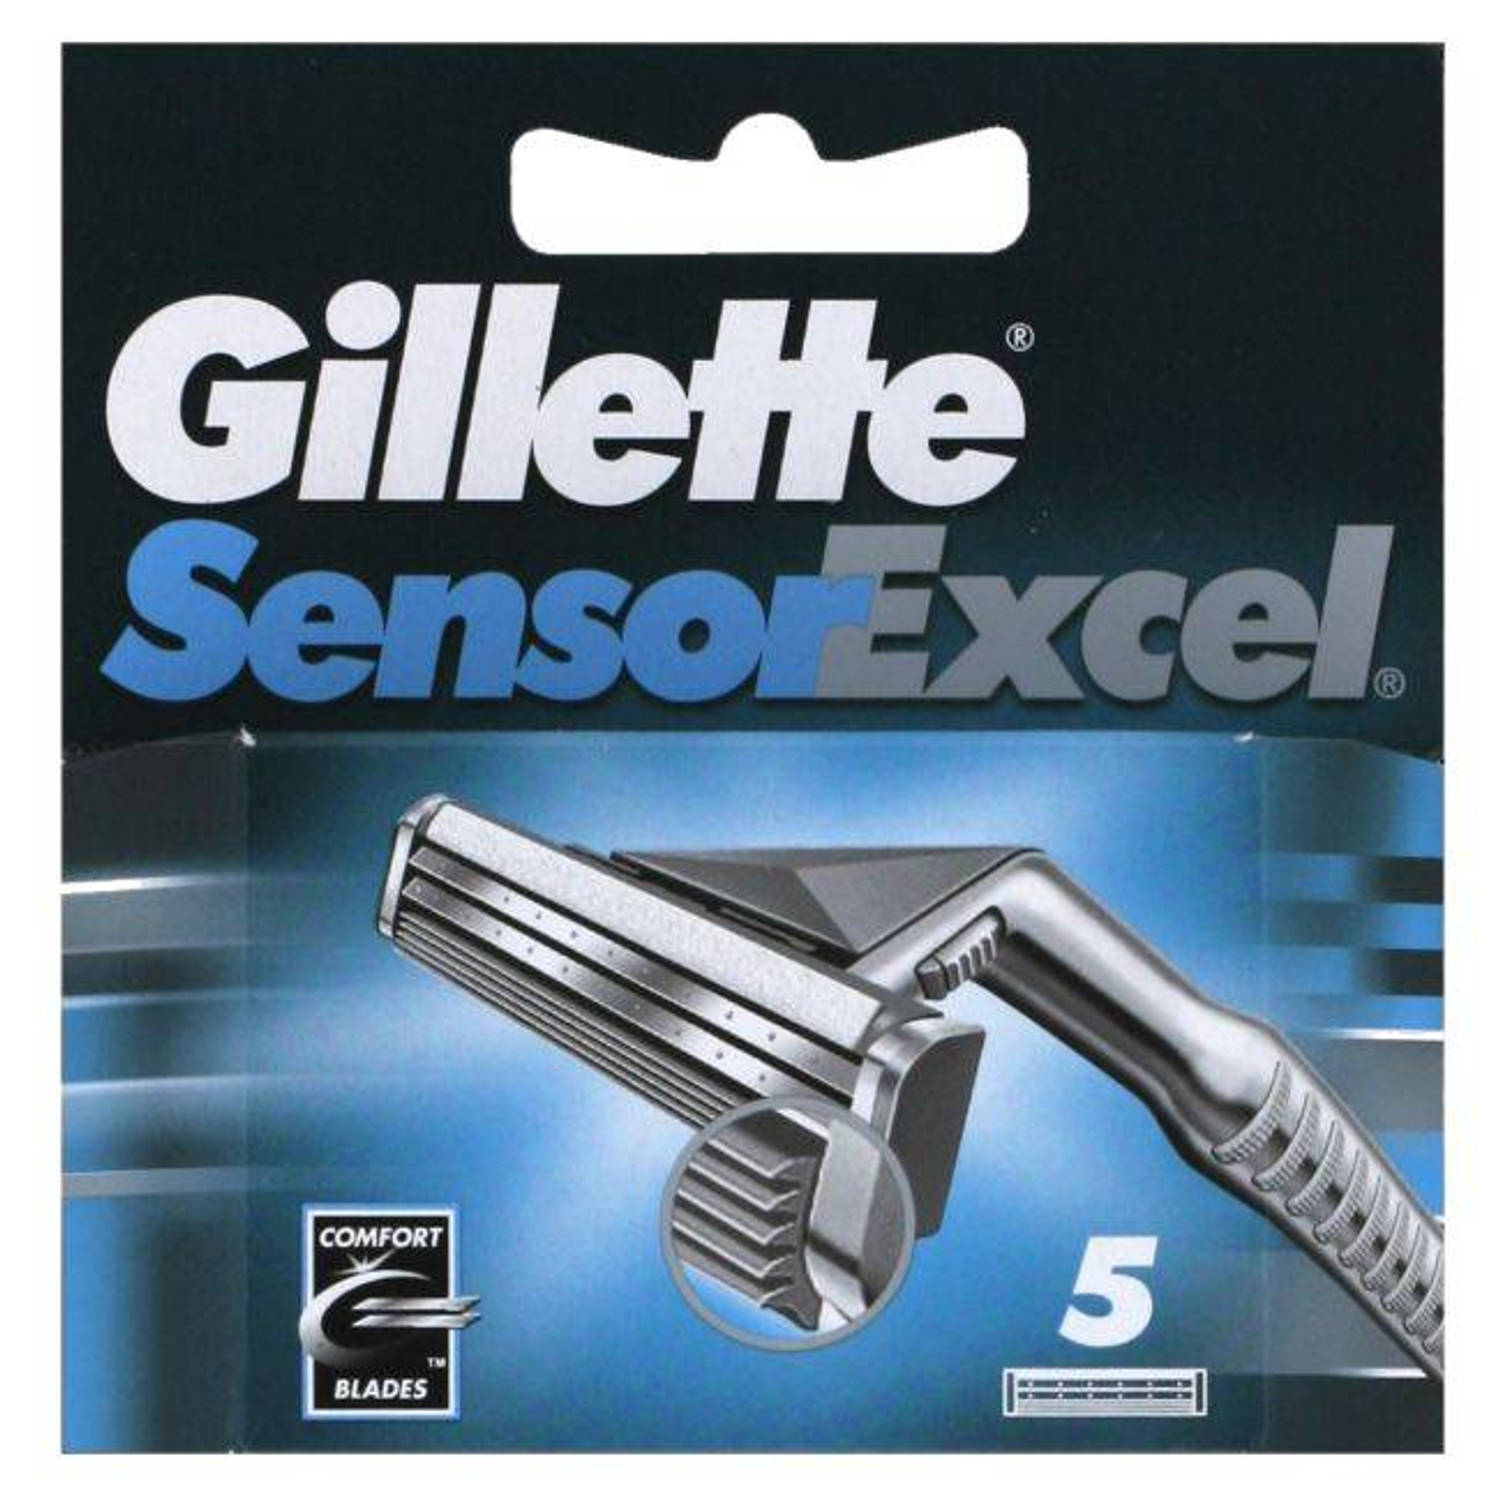 Gillette Sensor Excel 5 blade